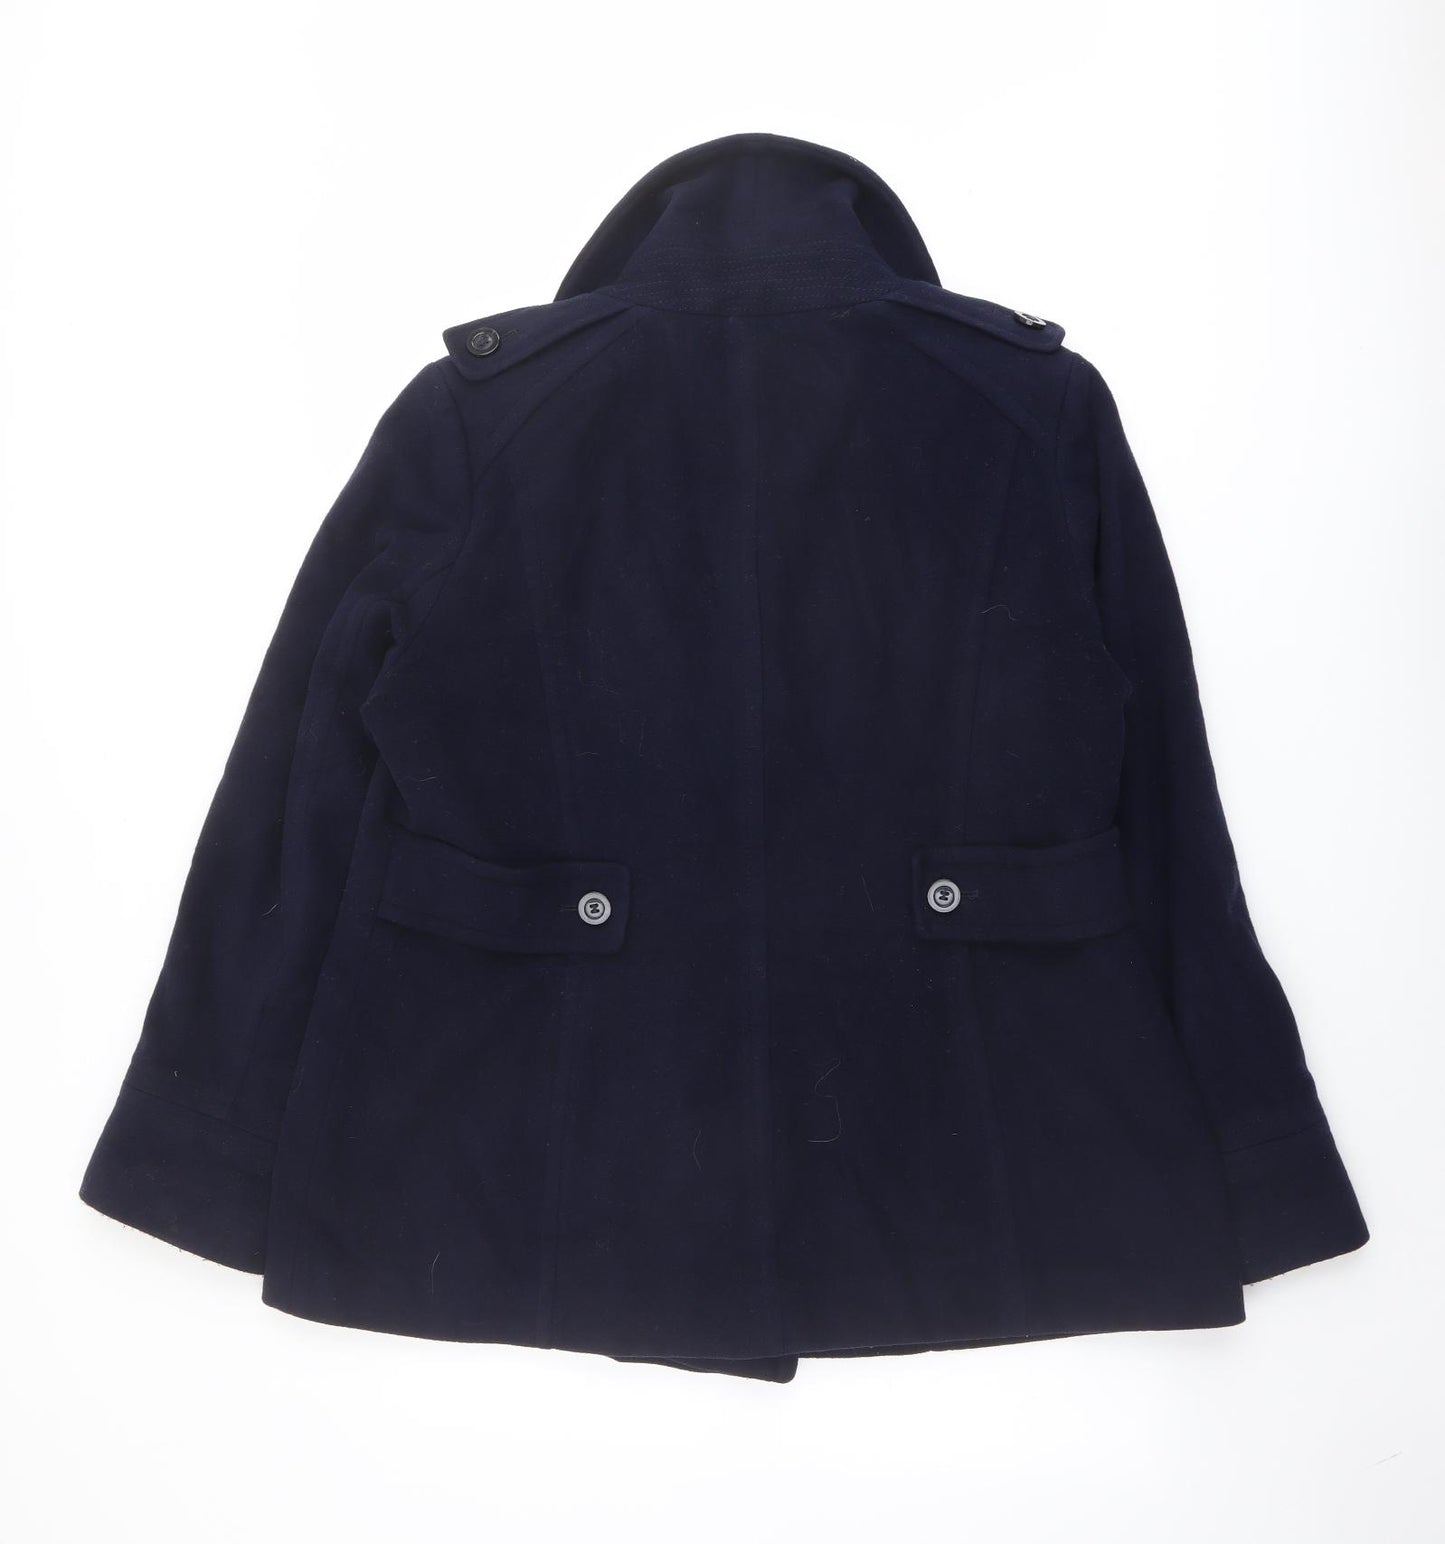 Planet Womens Blue Pea Coat Coat Size 18 Button